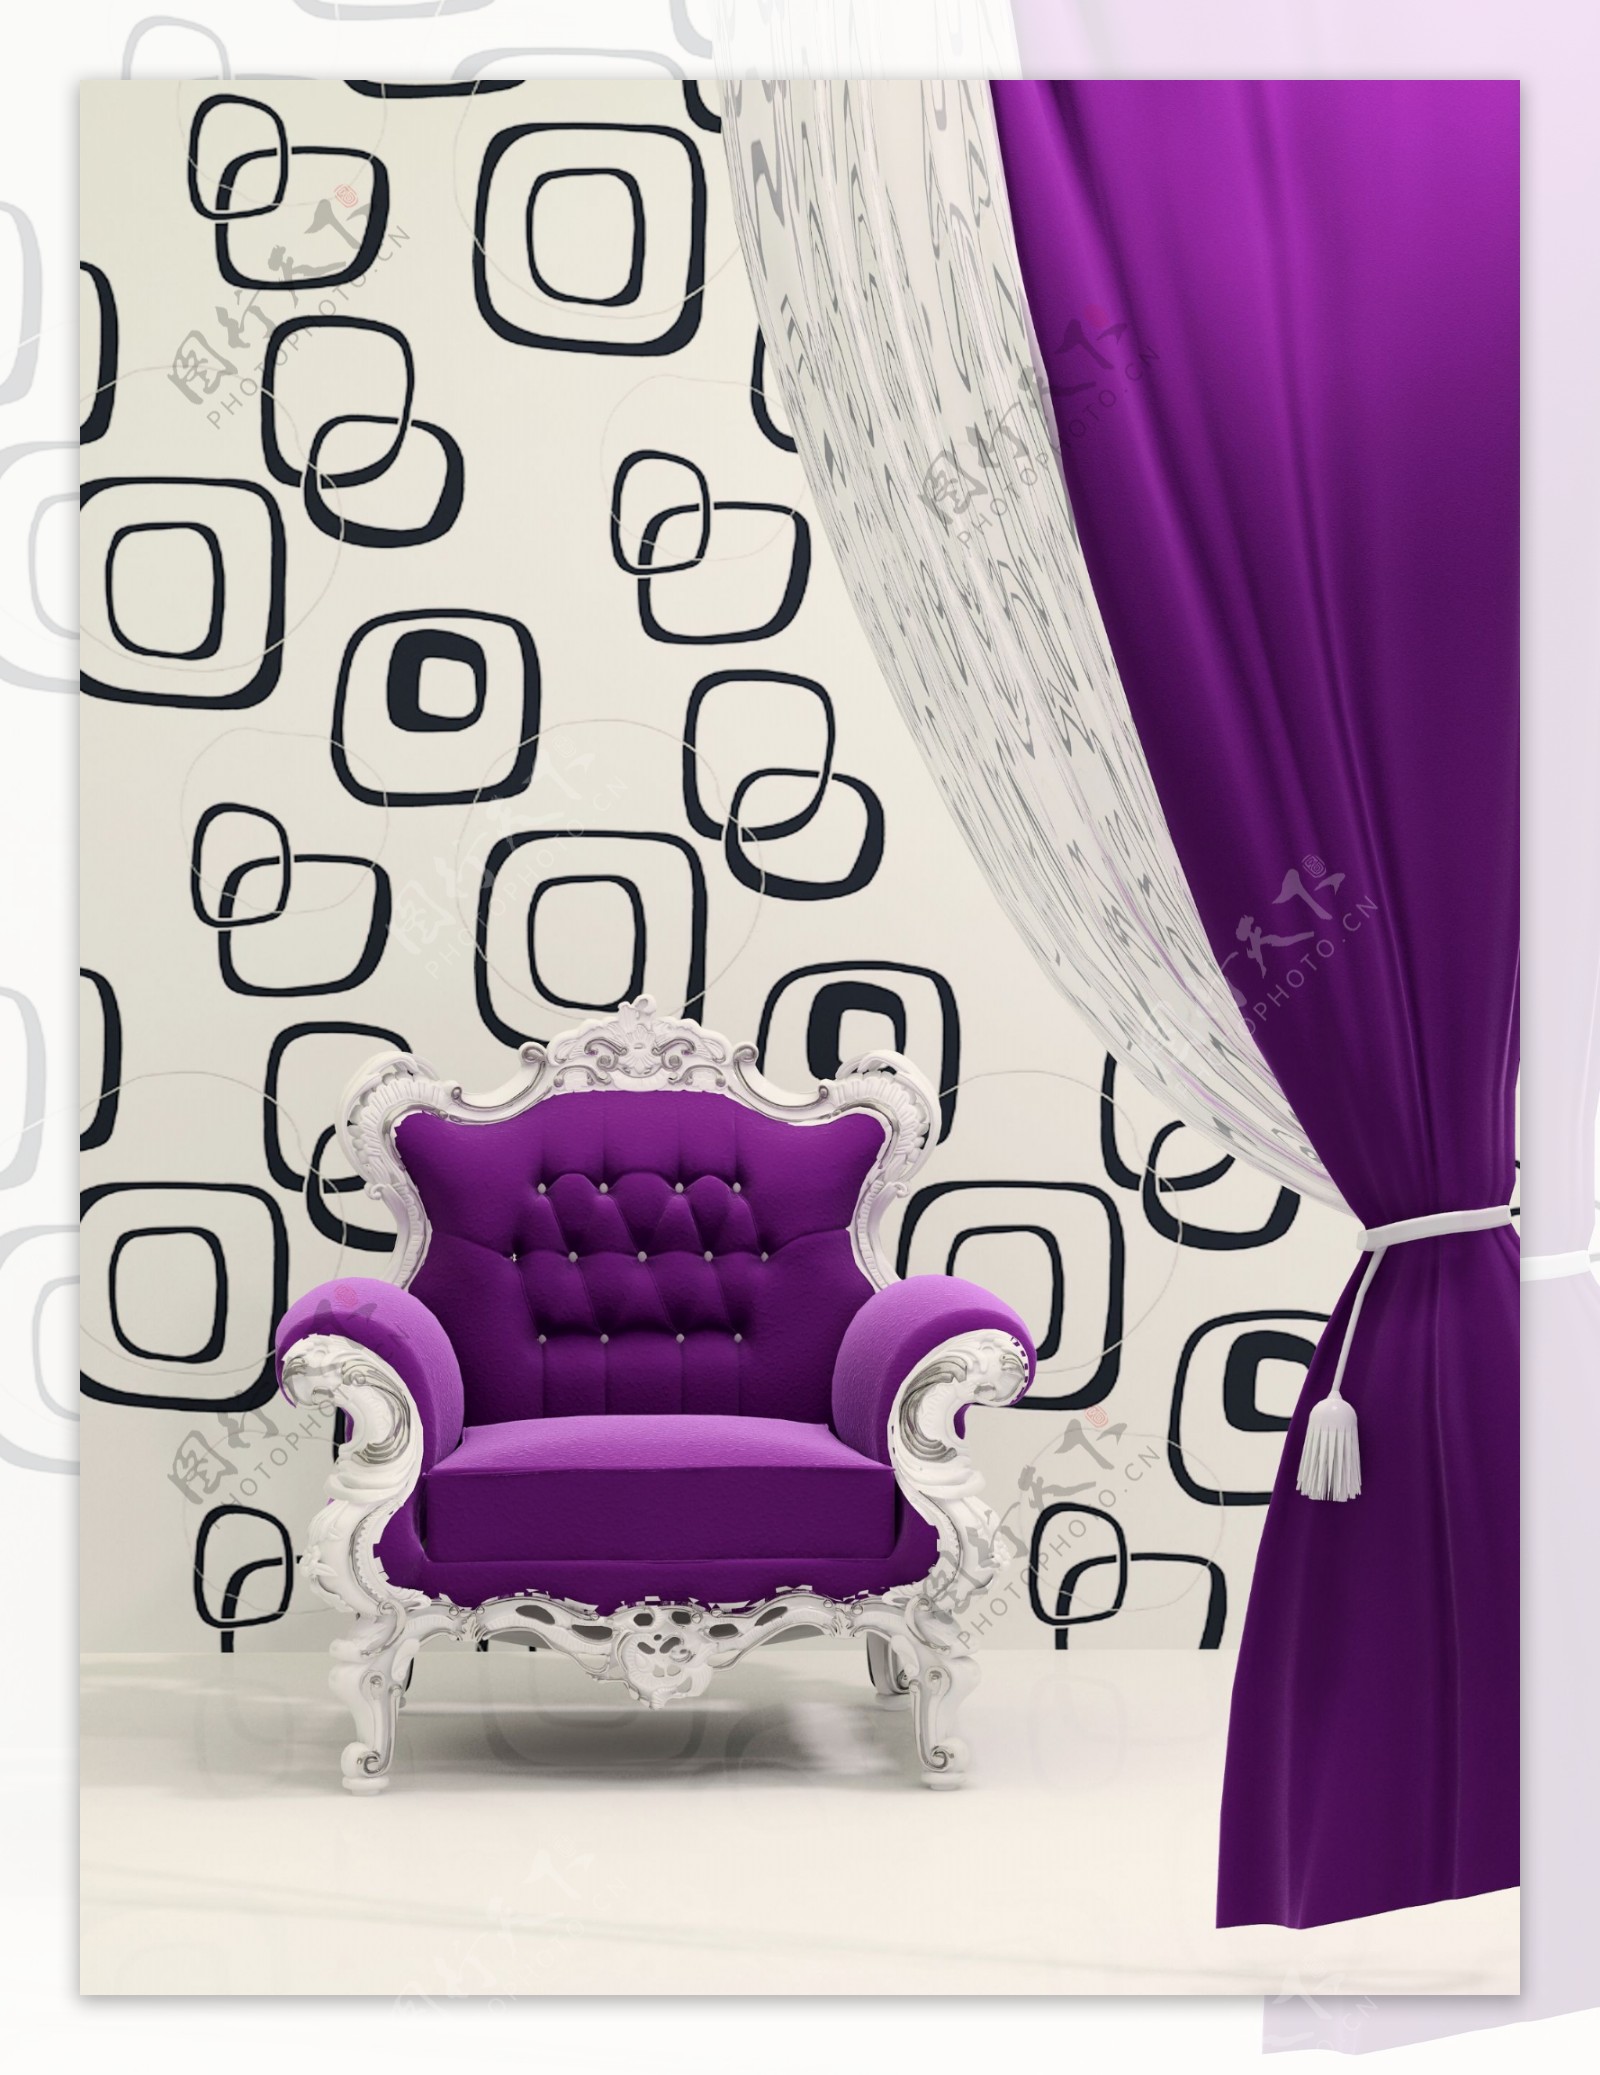 紫色沙发和紫色幕布图片